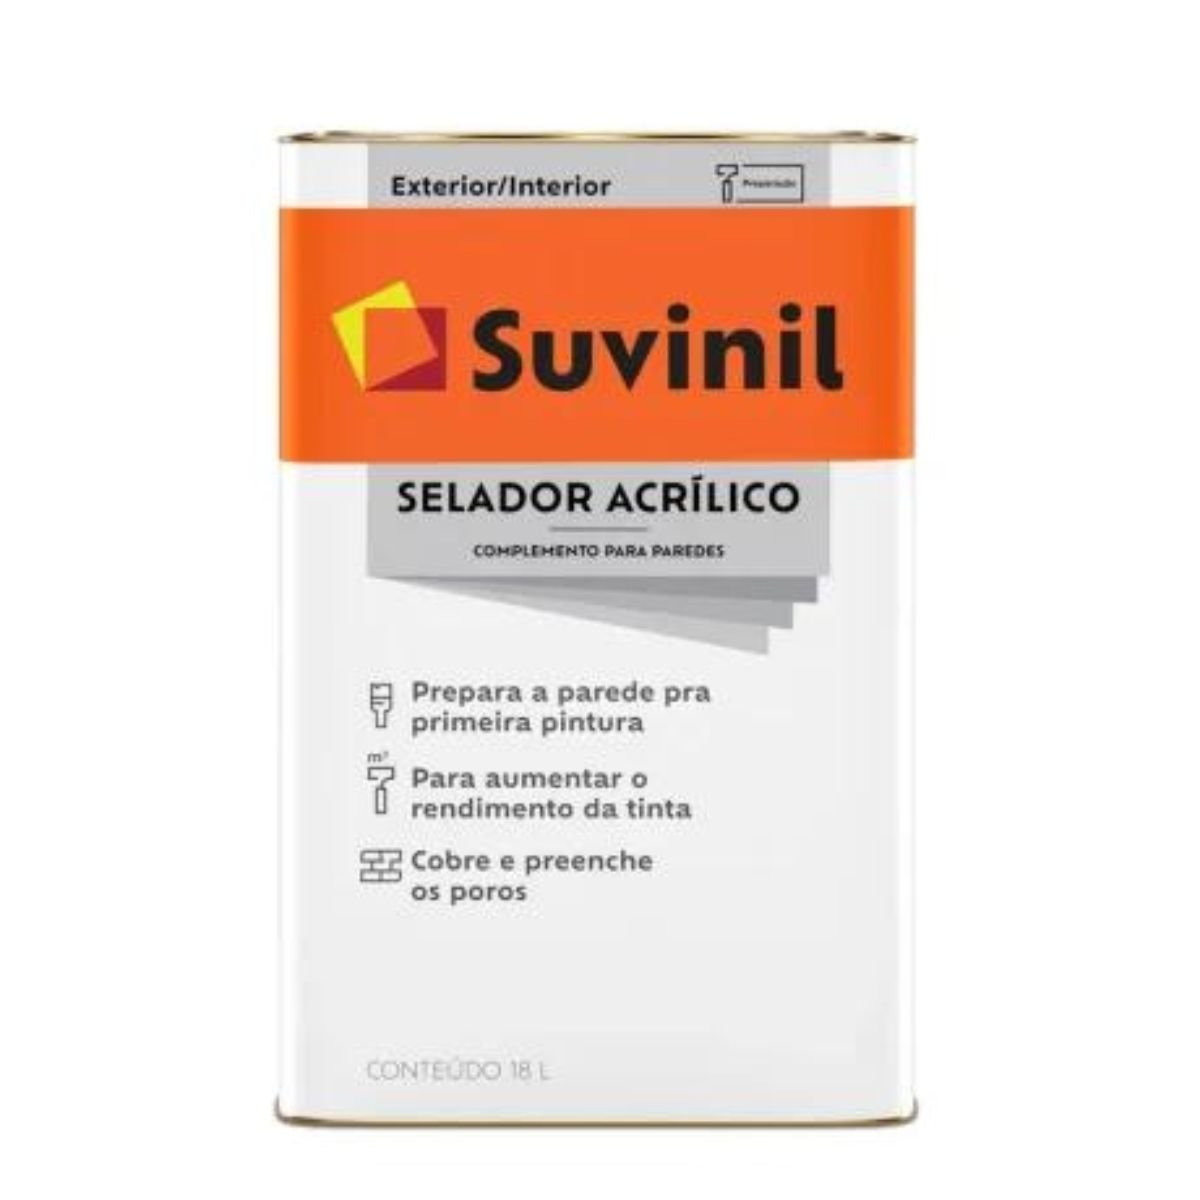 Selador Acrílico 18l | Suvinil - 1